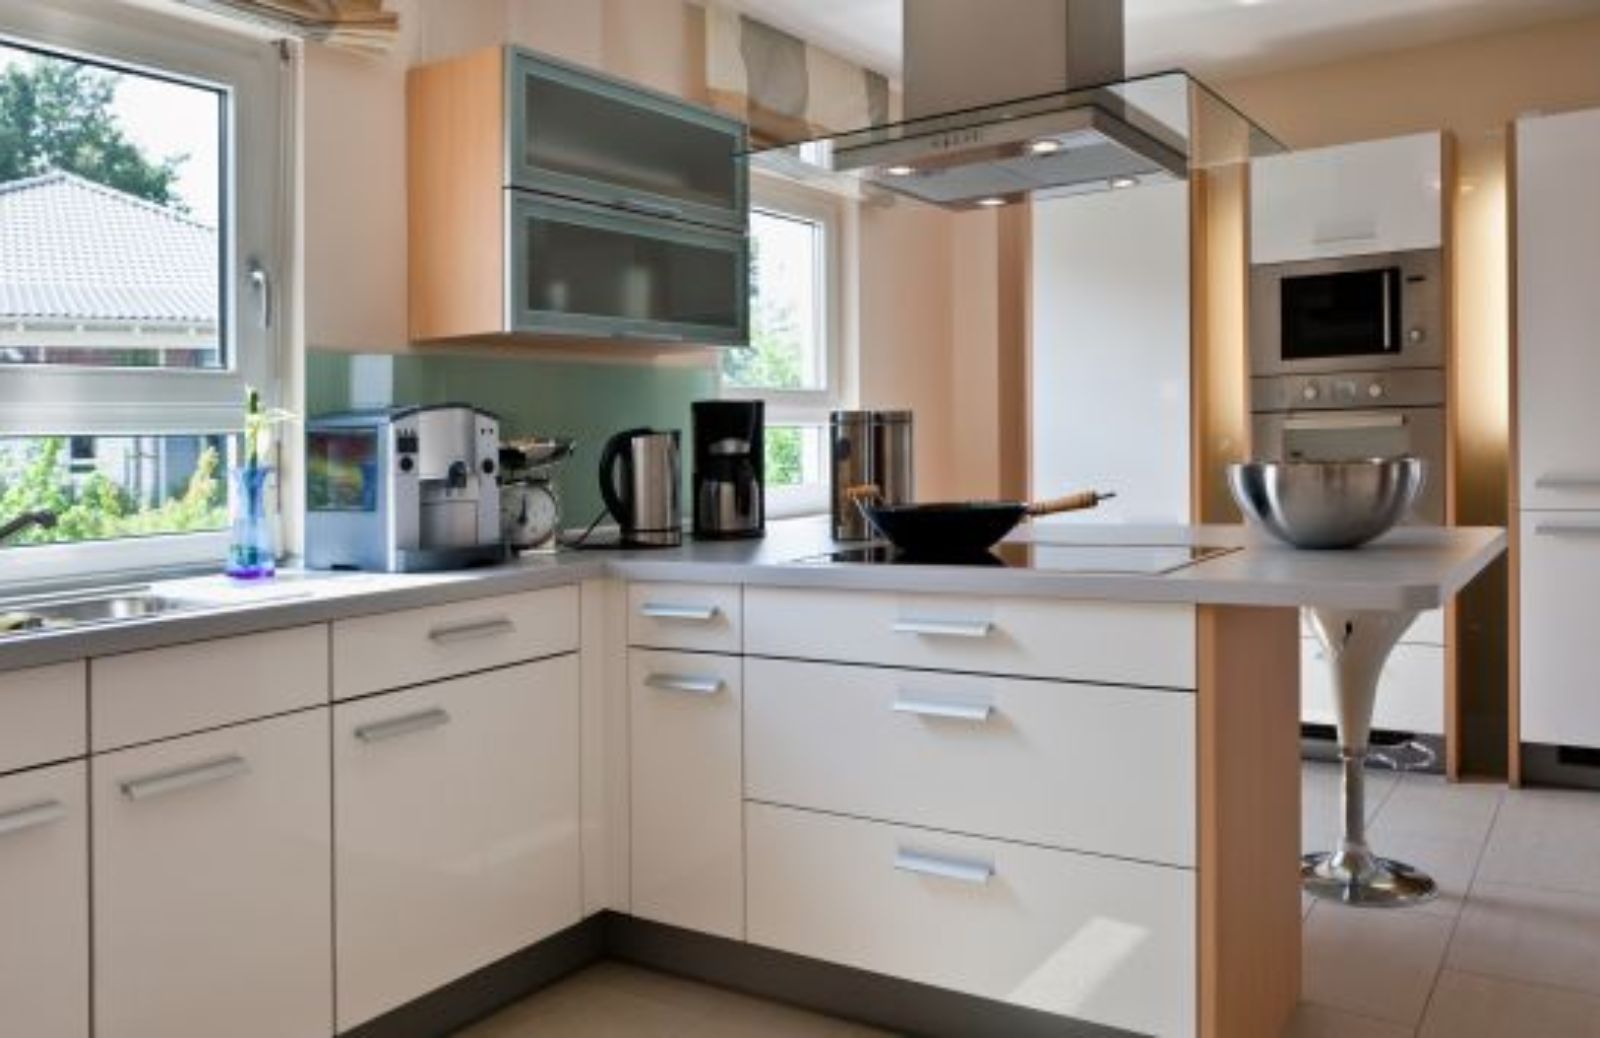 Come sfruttare al meglio lo spazio nel mobile cucina